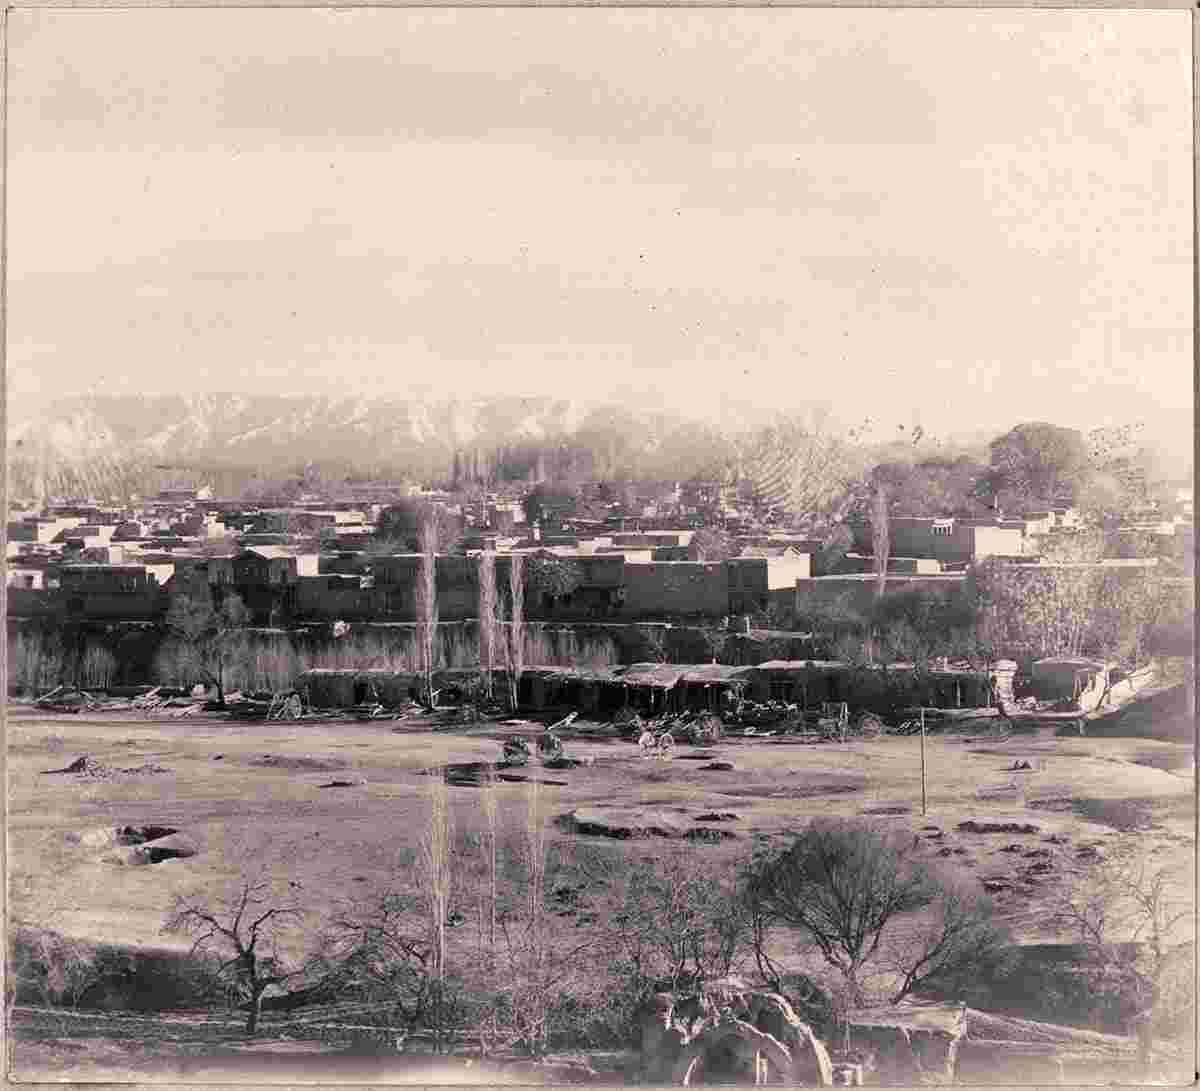 Samarkand. Old city, view from Shah Zinda, 1905